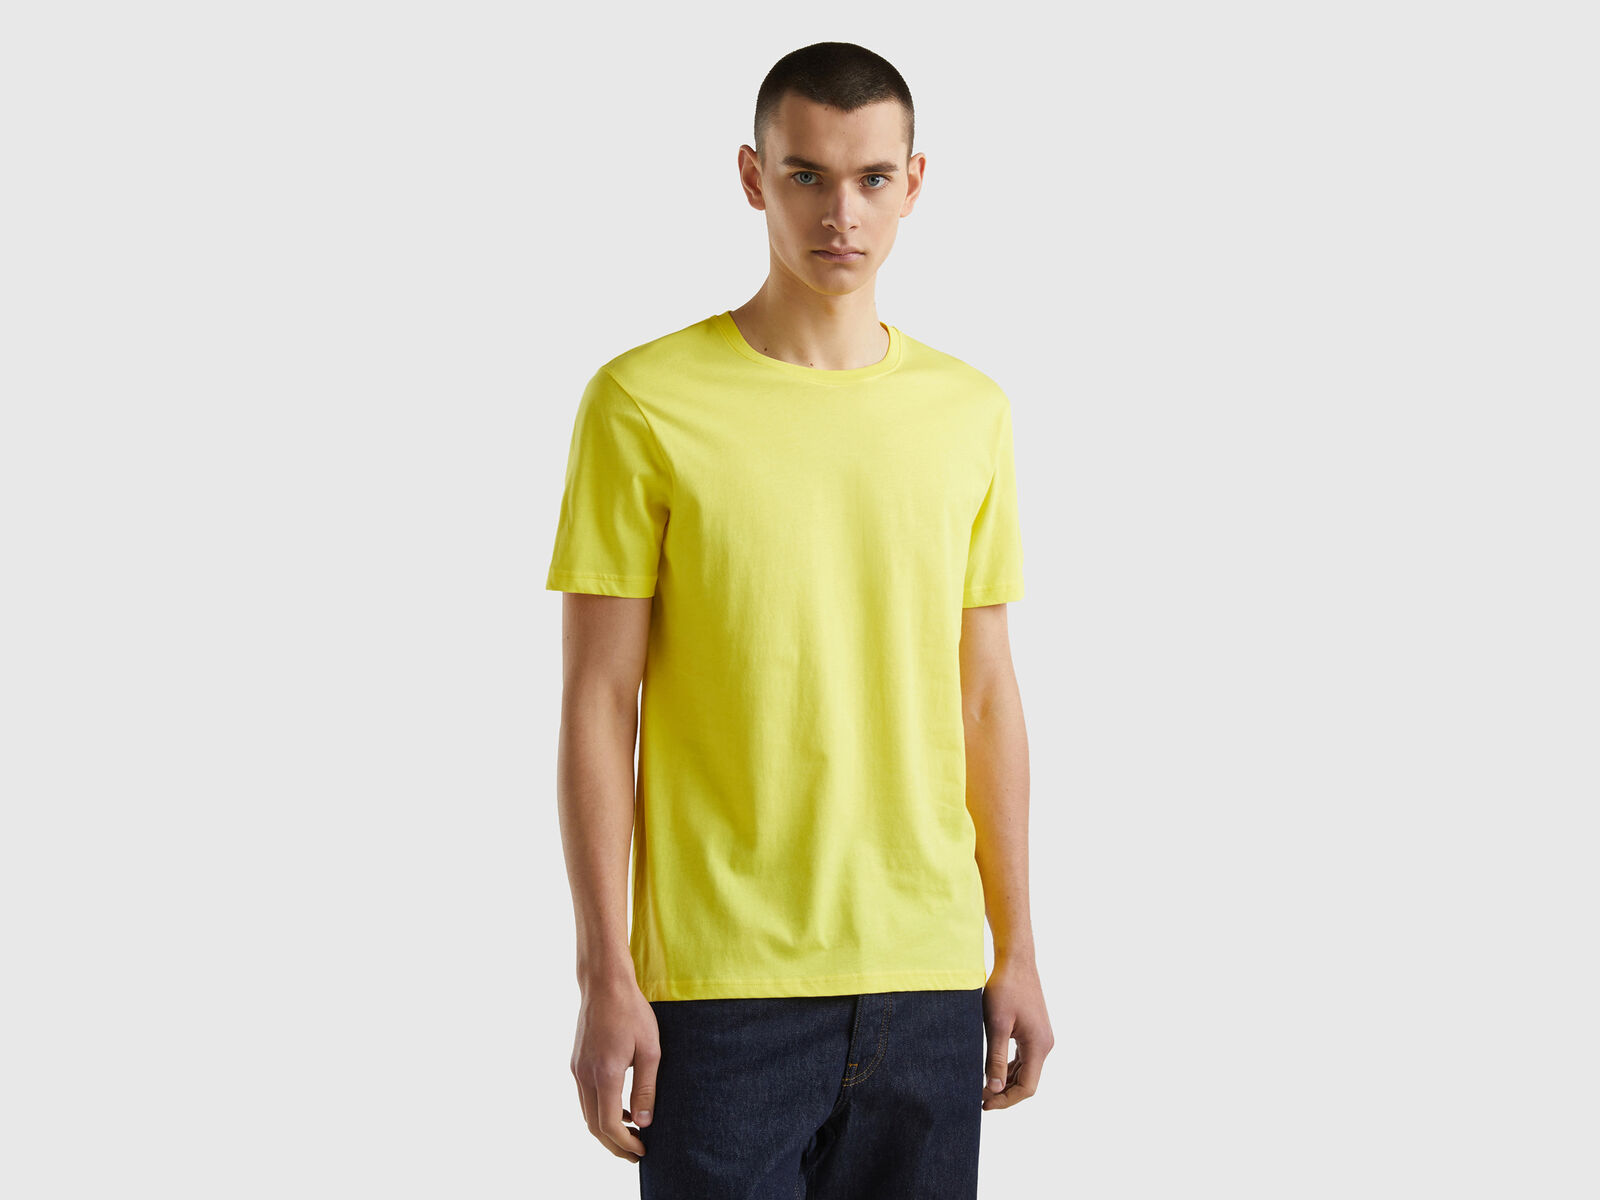 Yellow t-shirt